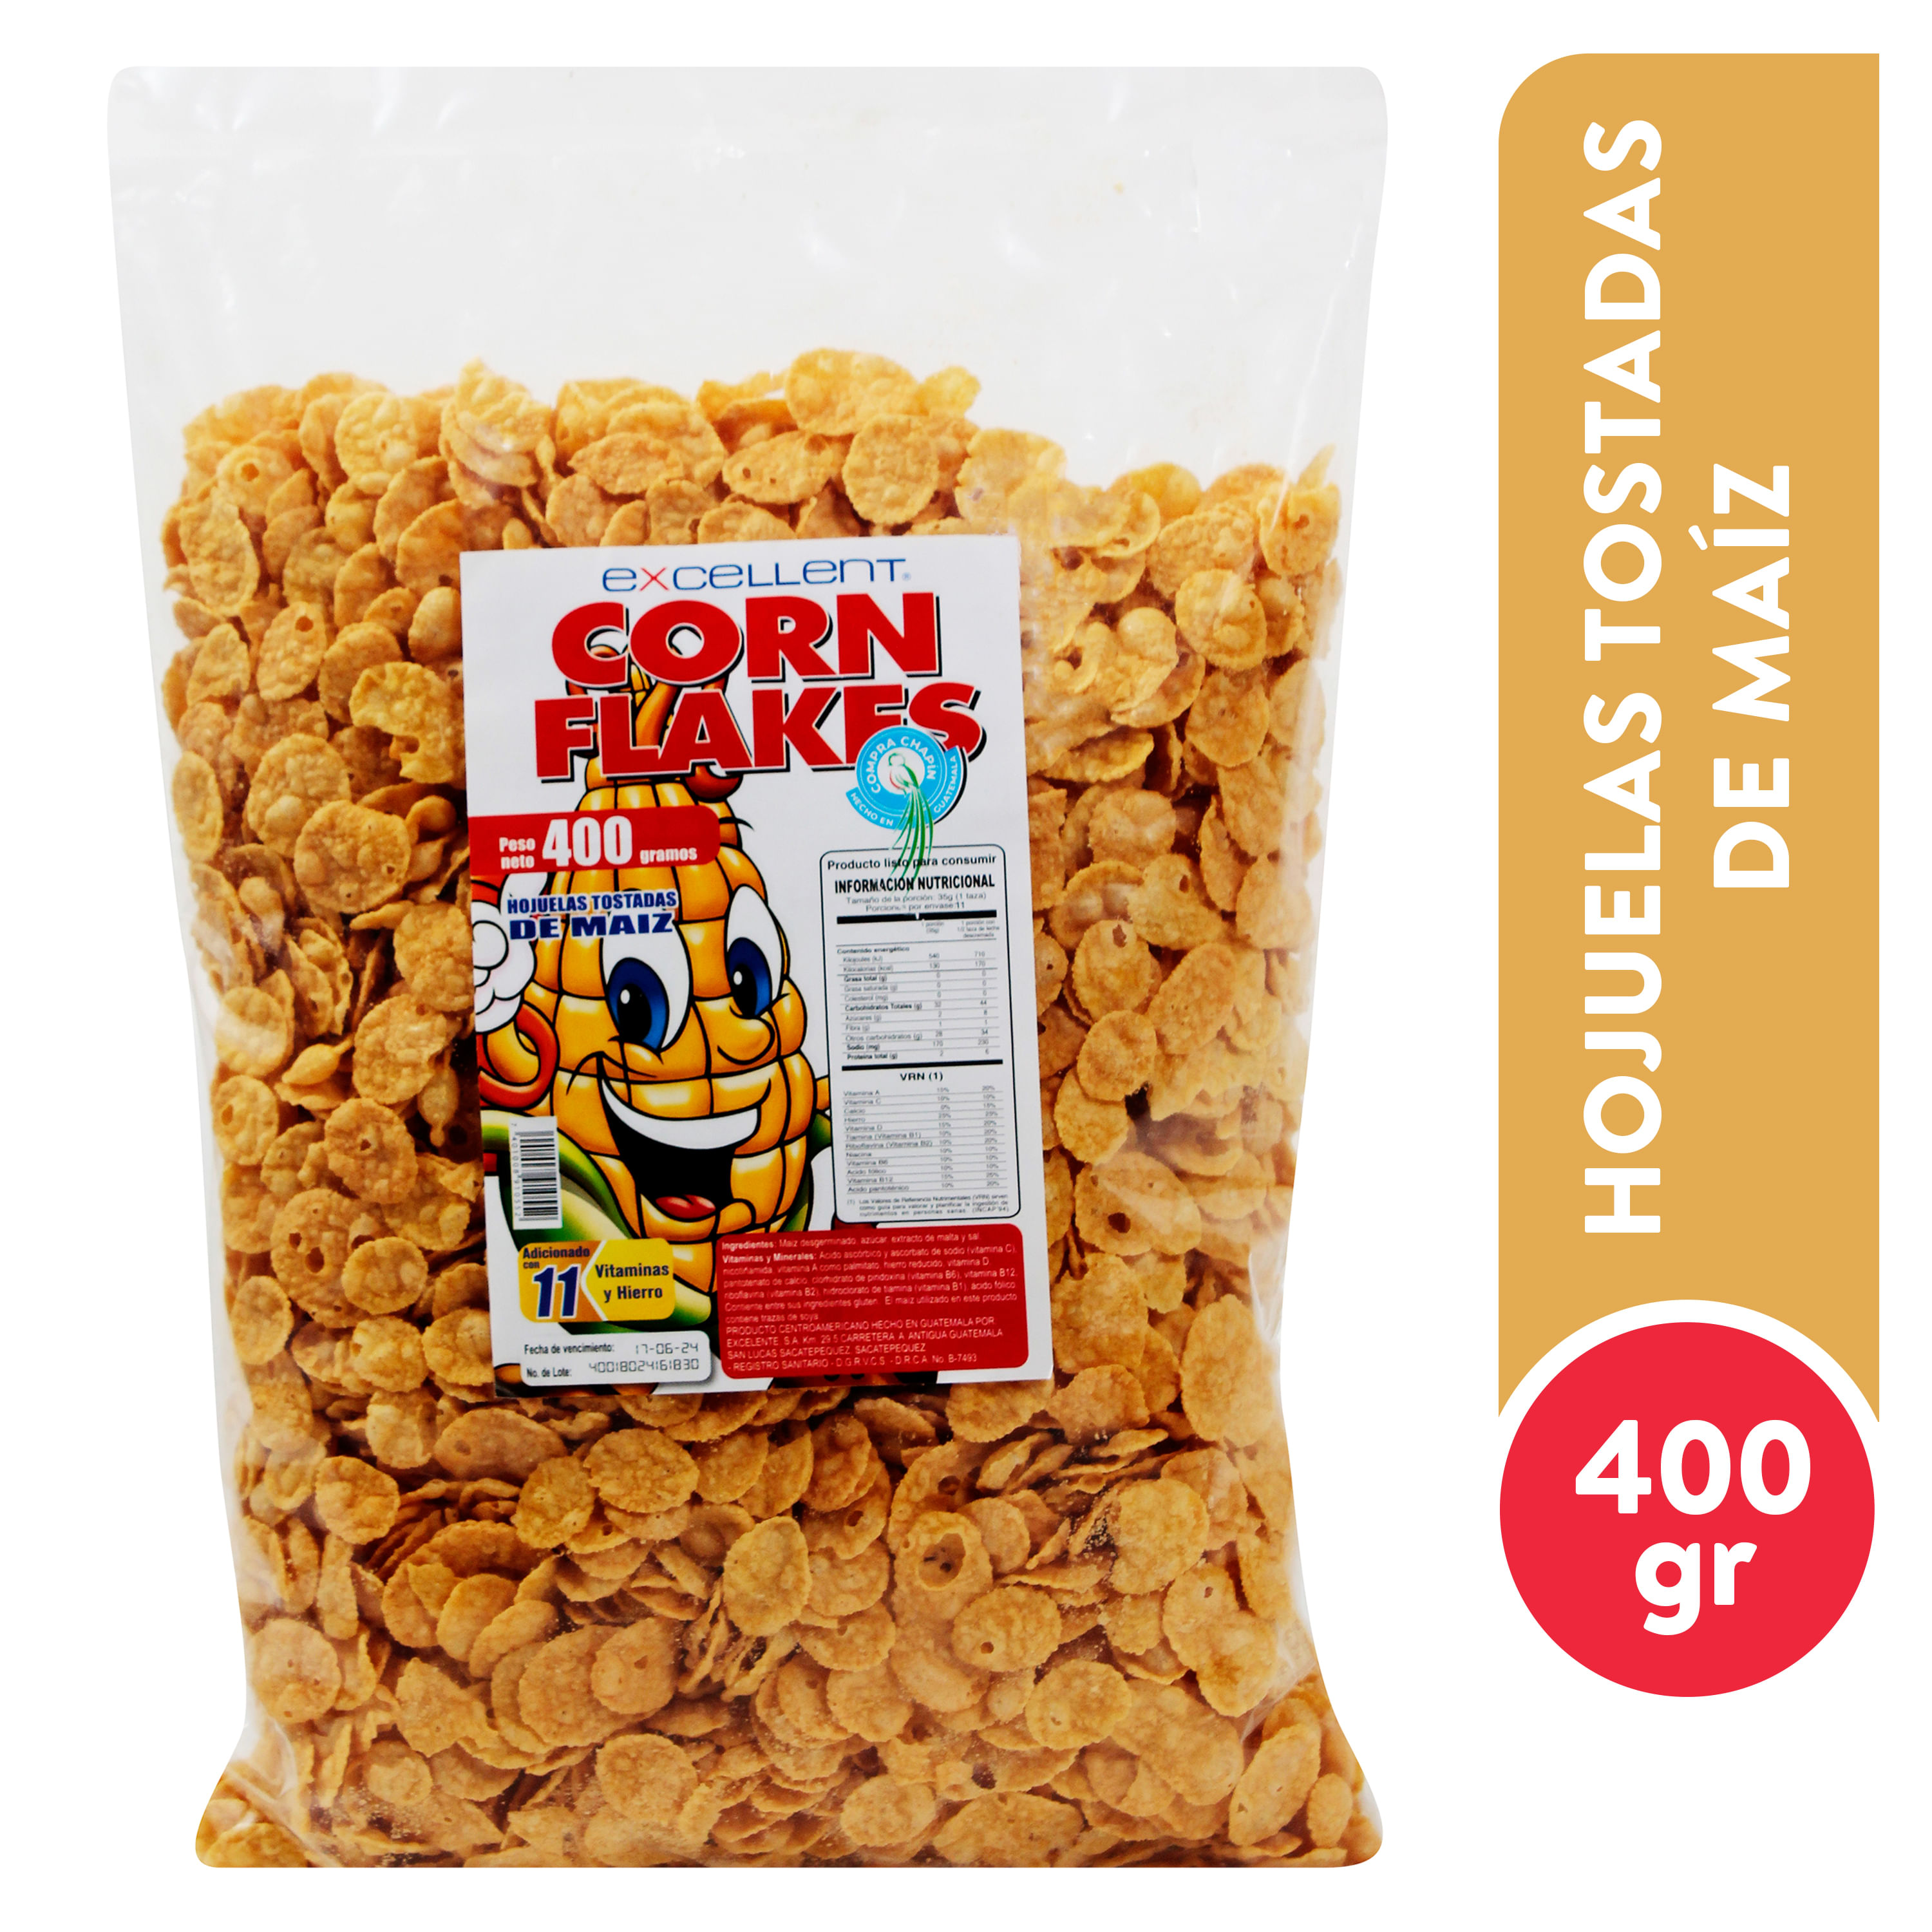 Comprar Cereal Excellent Corn Flakes 400 Gr, Walmart Guatemala - Maxi  Despensa